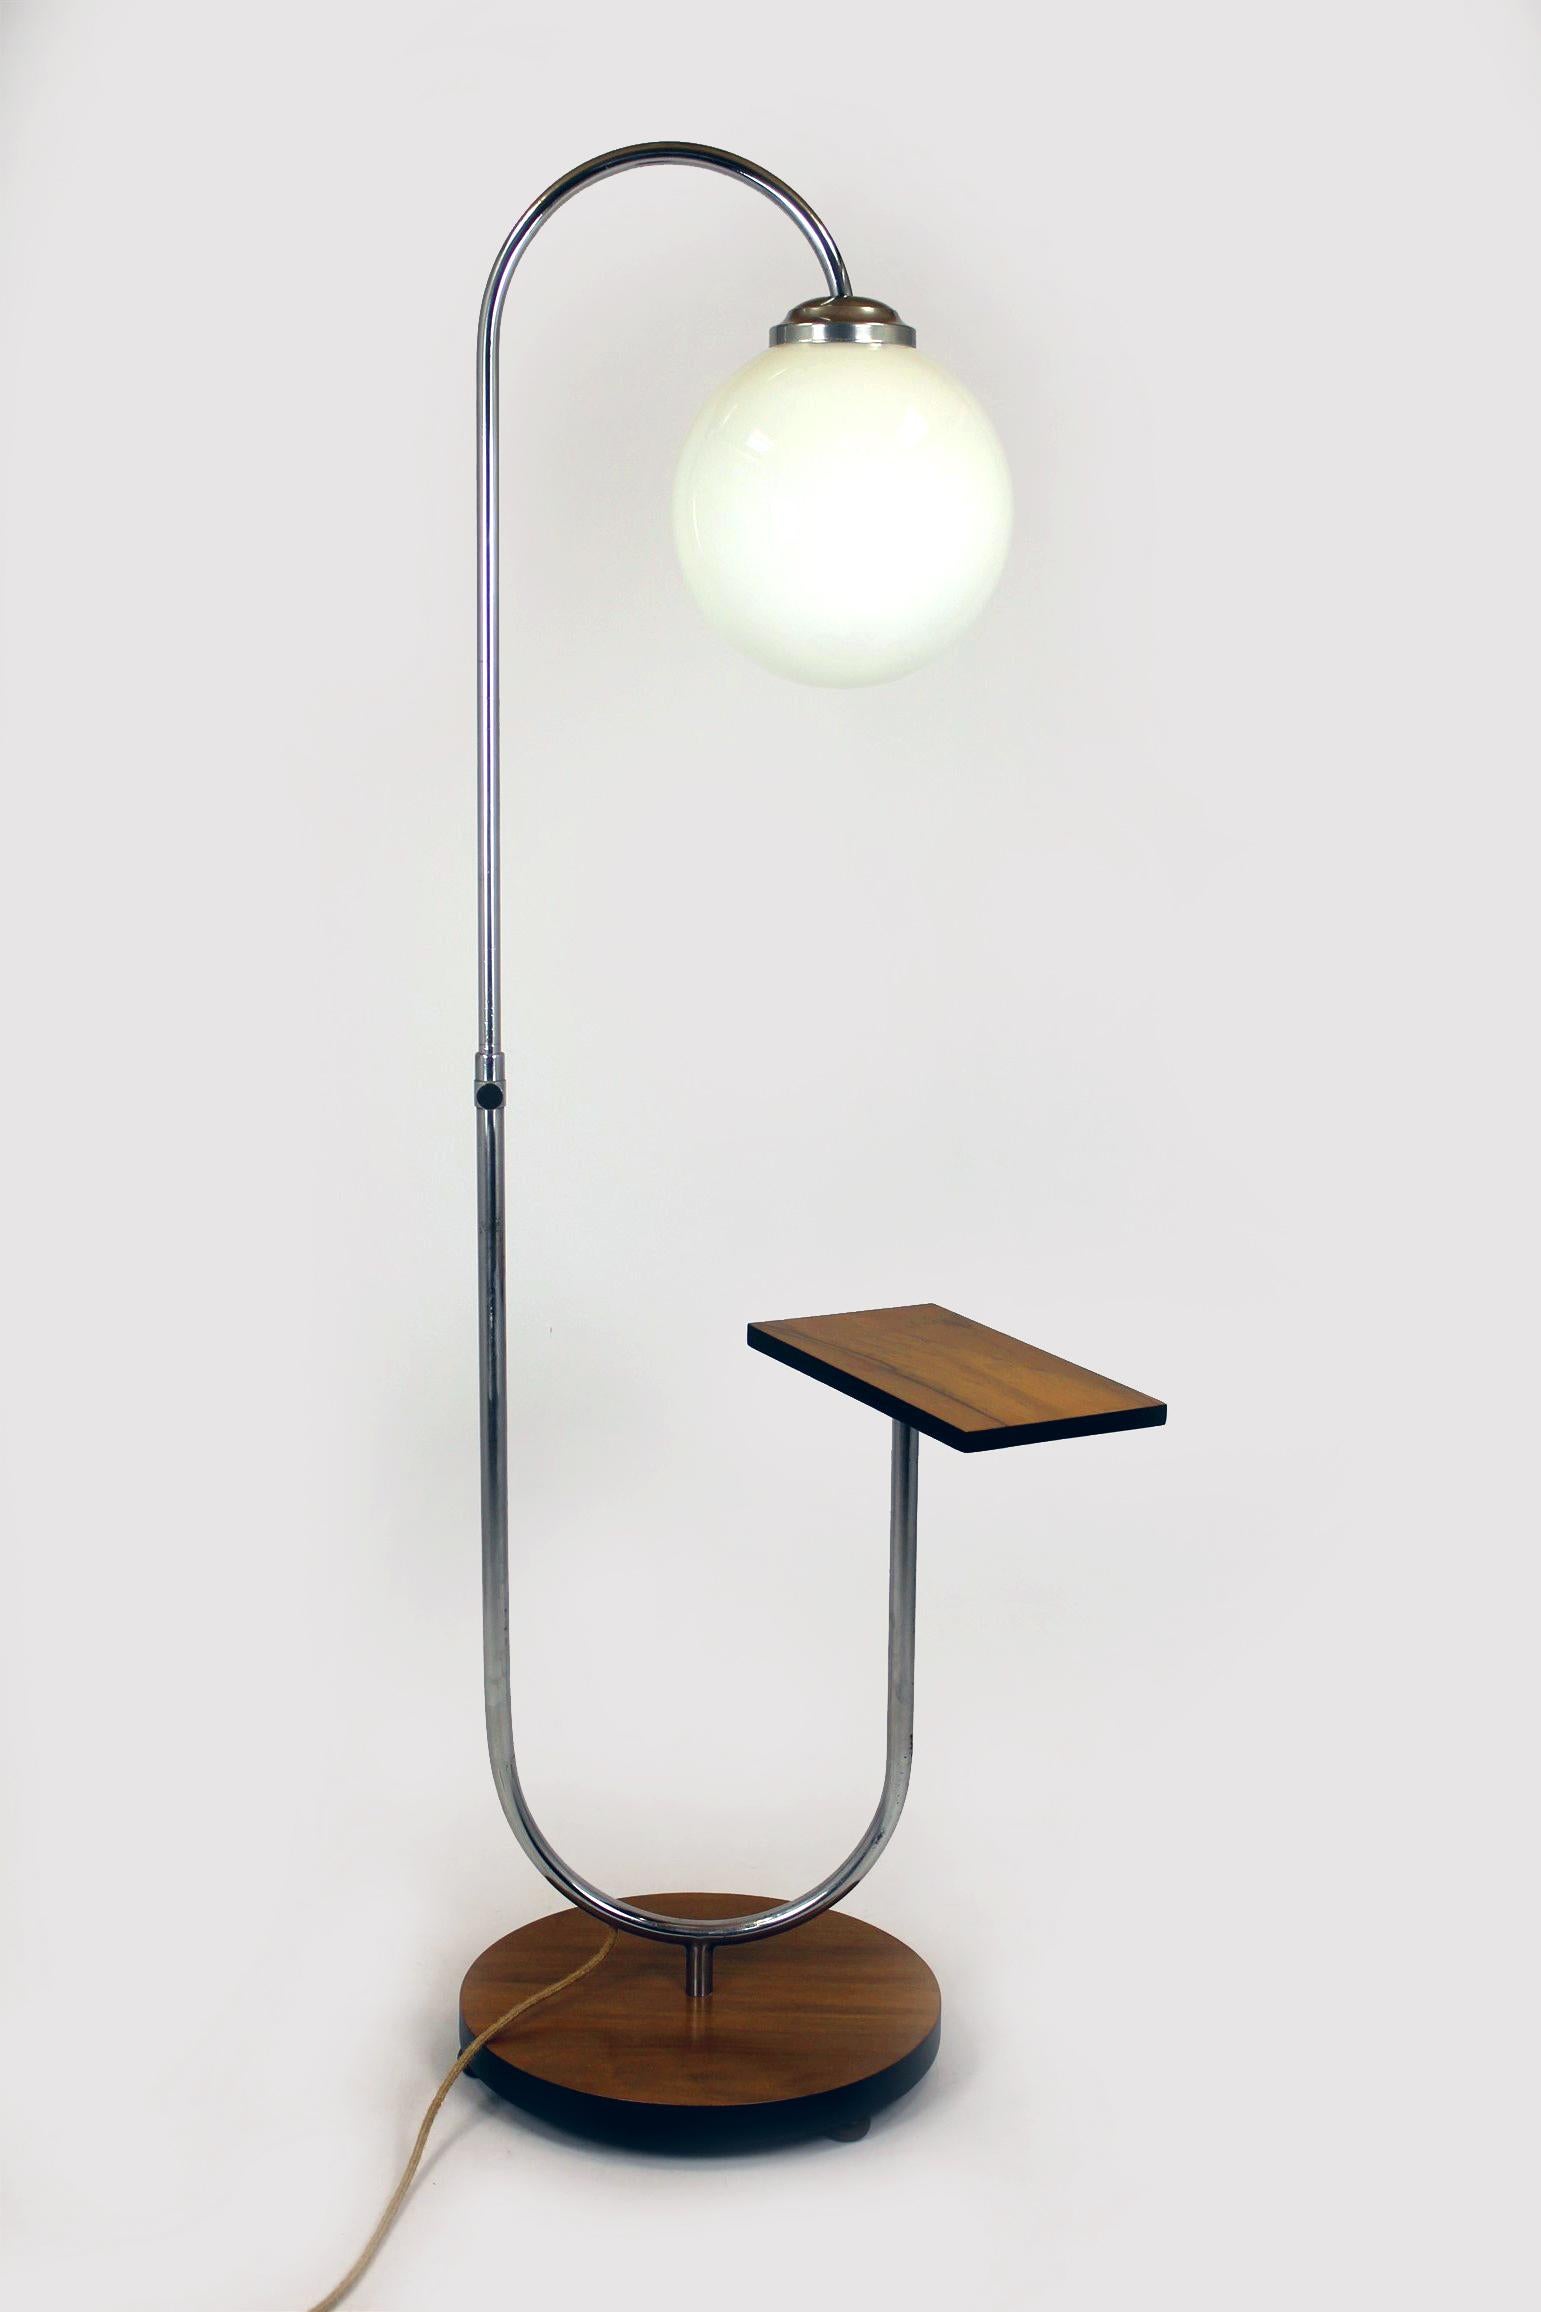 Ce lampadaire Bauhaus a été conçu par Jindrich Halabala et fabriqué en République tchèque dans les années 1940. La lampe a été rénovée - elle est dotée d'un nouveau câble électrique, d'un interrupteur au sol et d'une prise, le tout dans un style